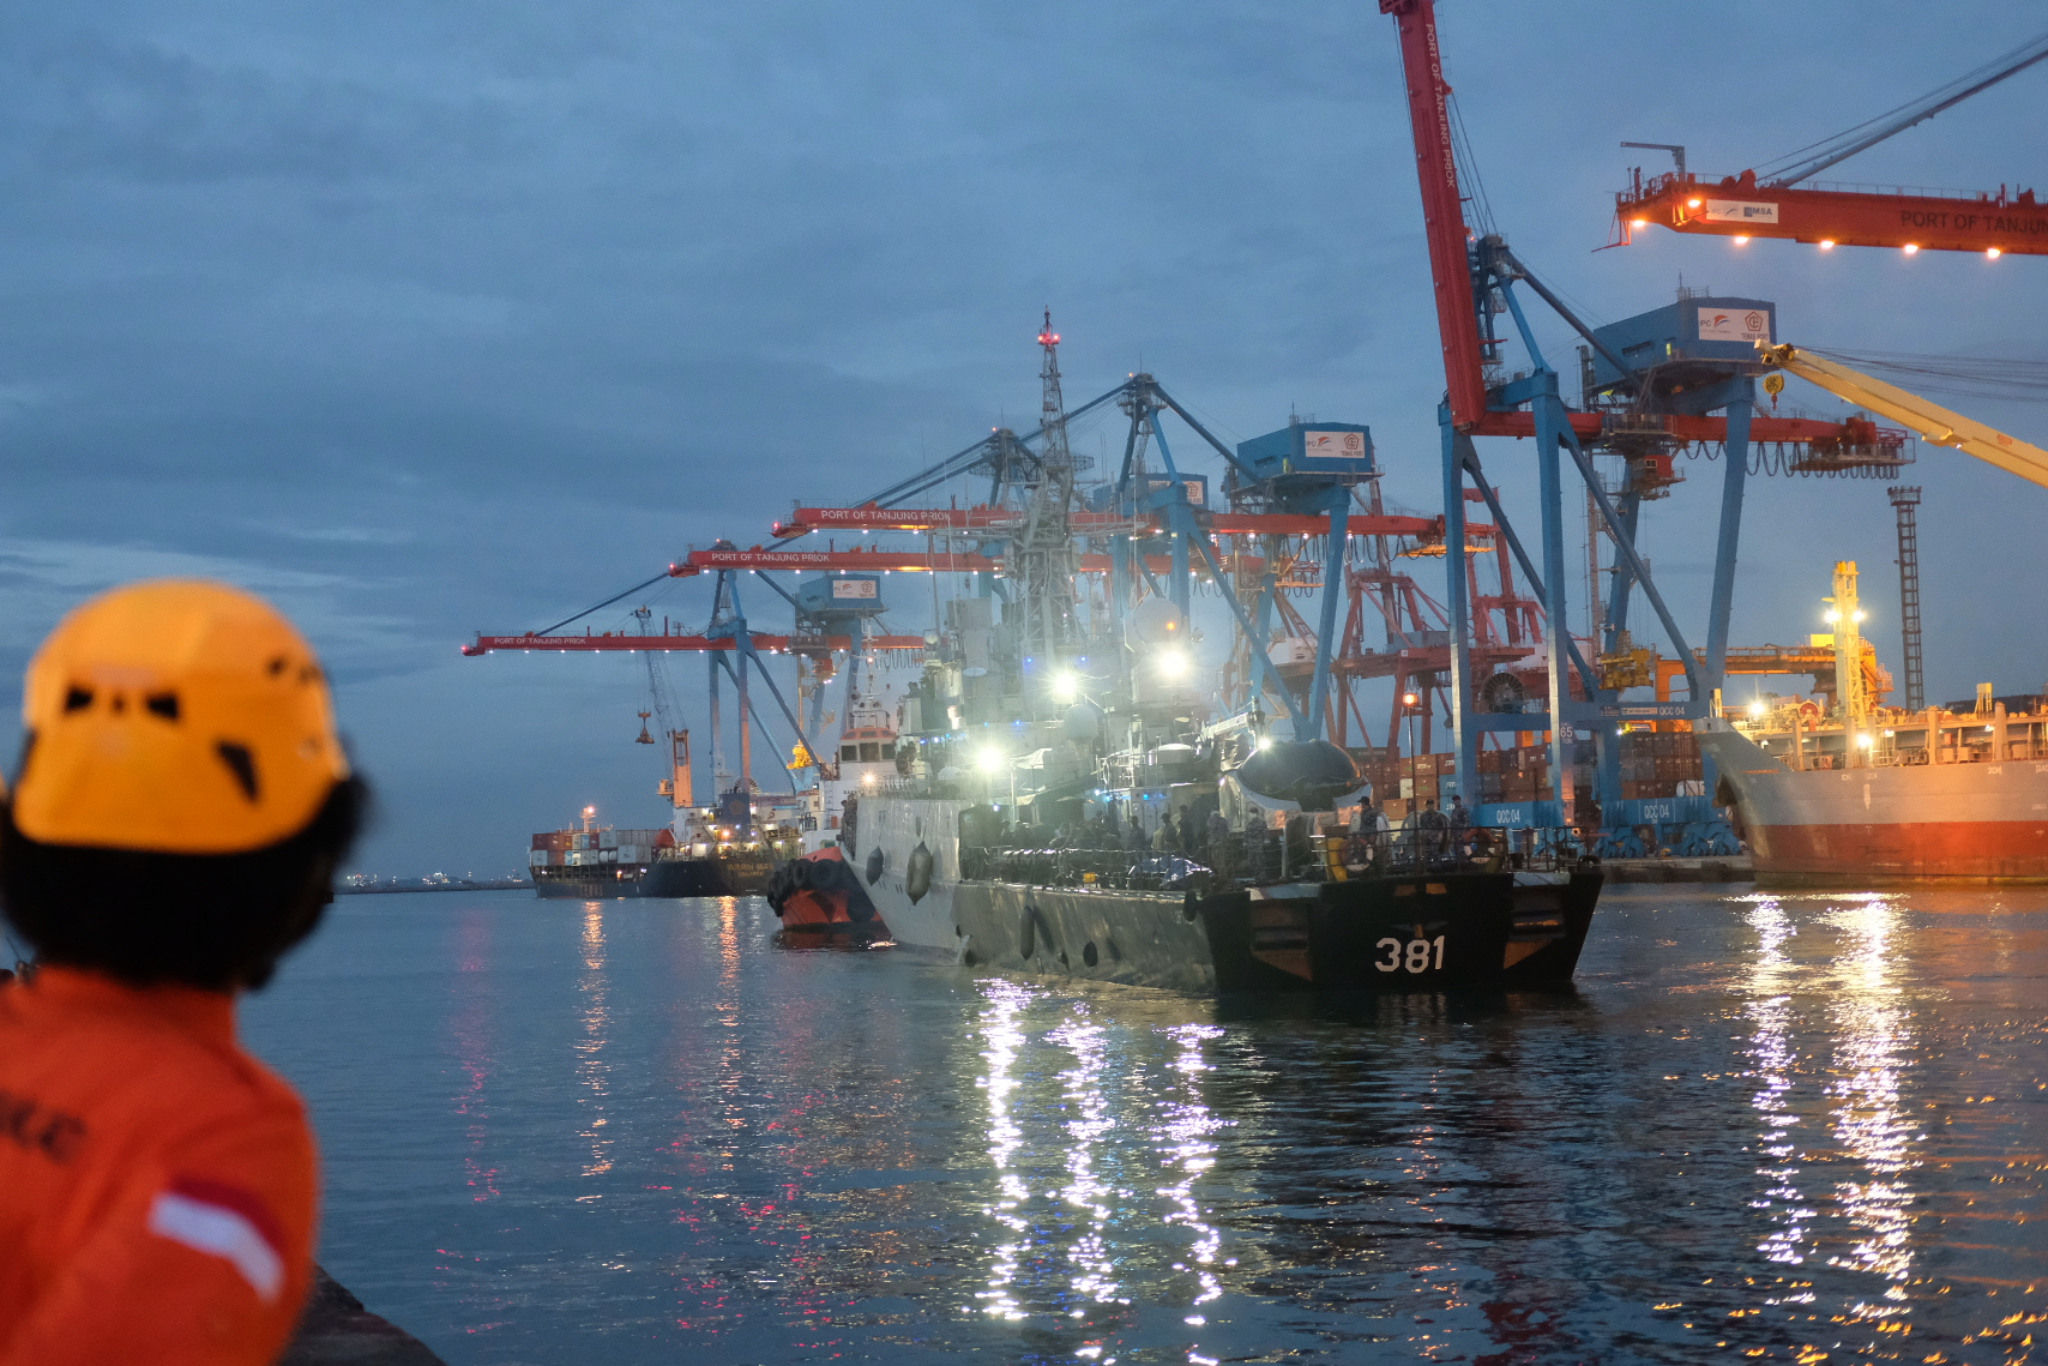 <p>Kapal melintas didekat crane bongkar muat peti kemas di dermaga Pelabuhan Tanjung Priok, Jakarta, Senin, 11 Januari 2021. Foto: Ismail Pohan/TrenAsia</p>
